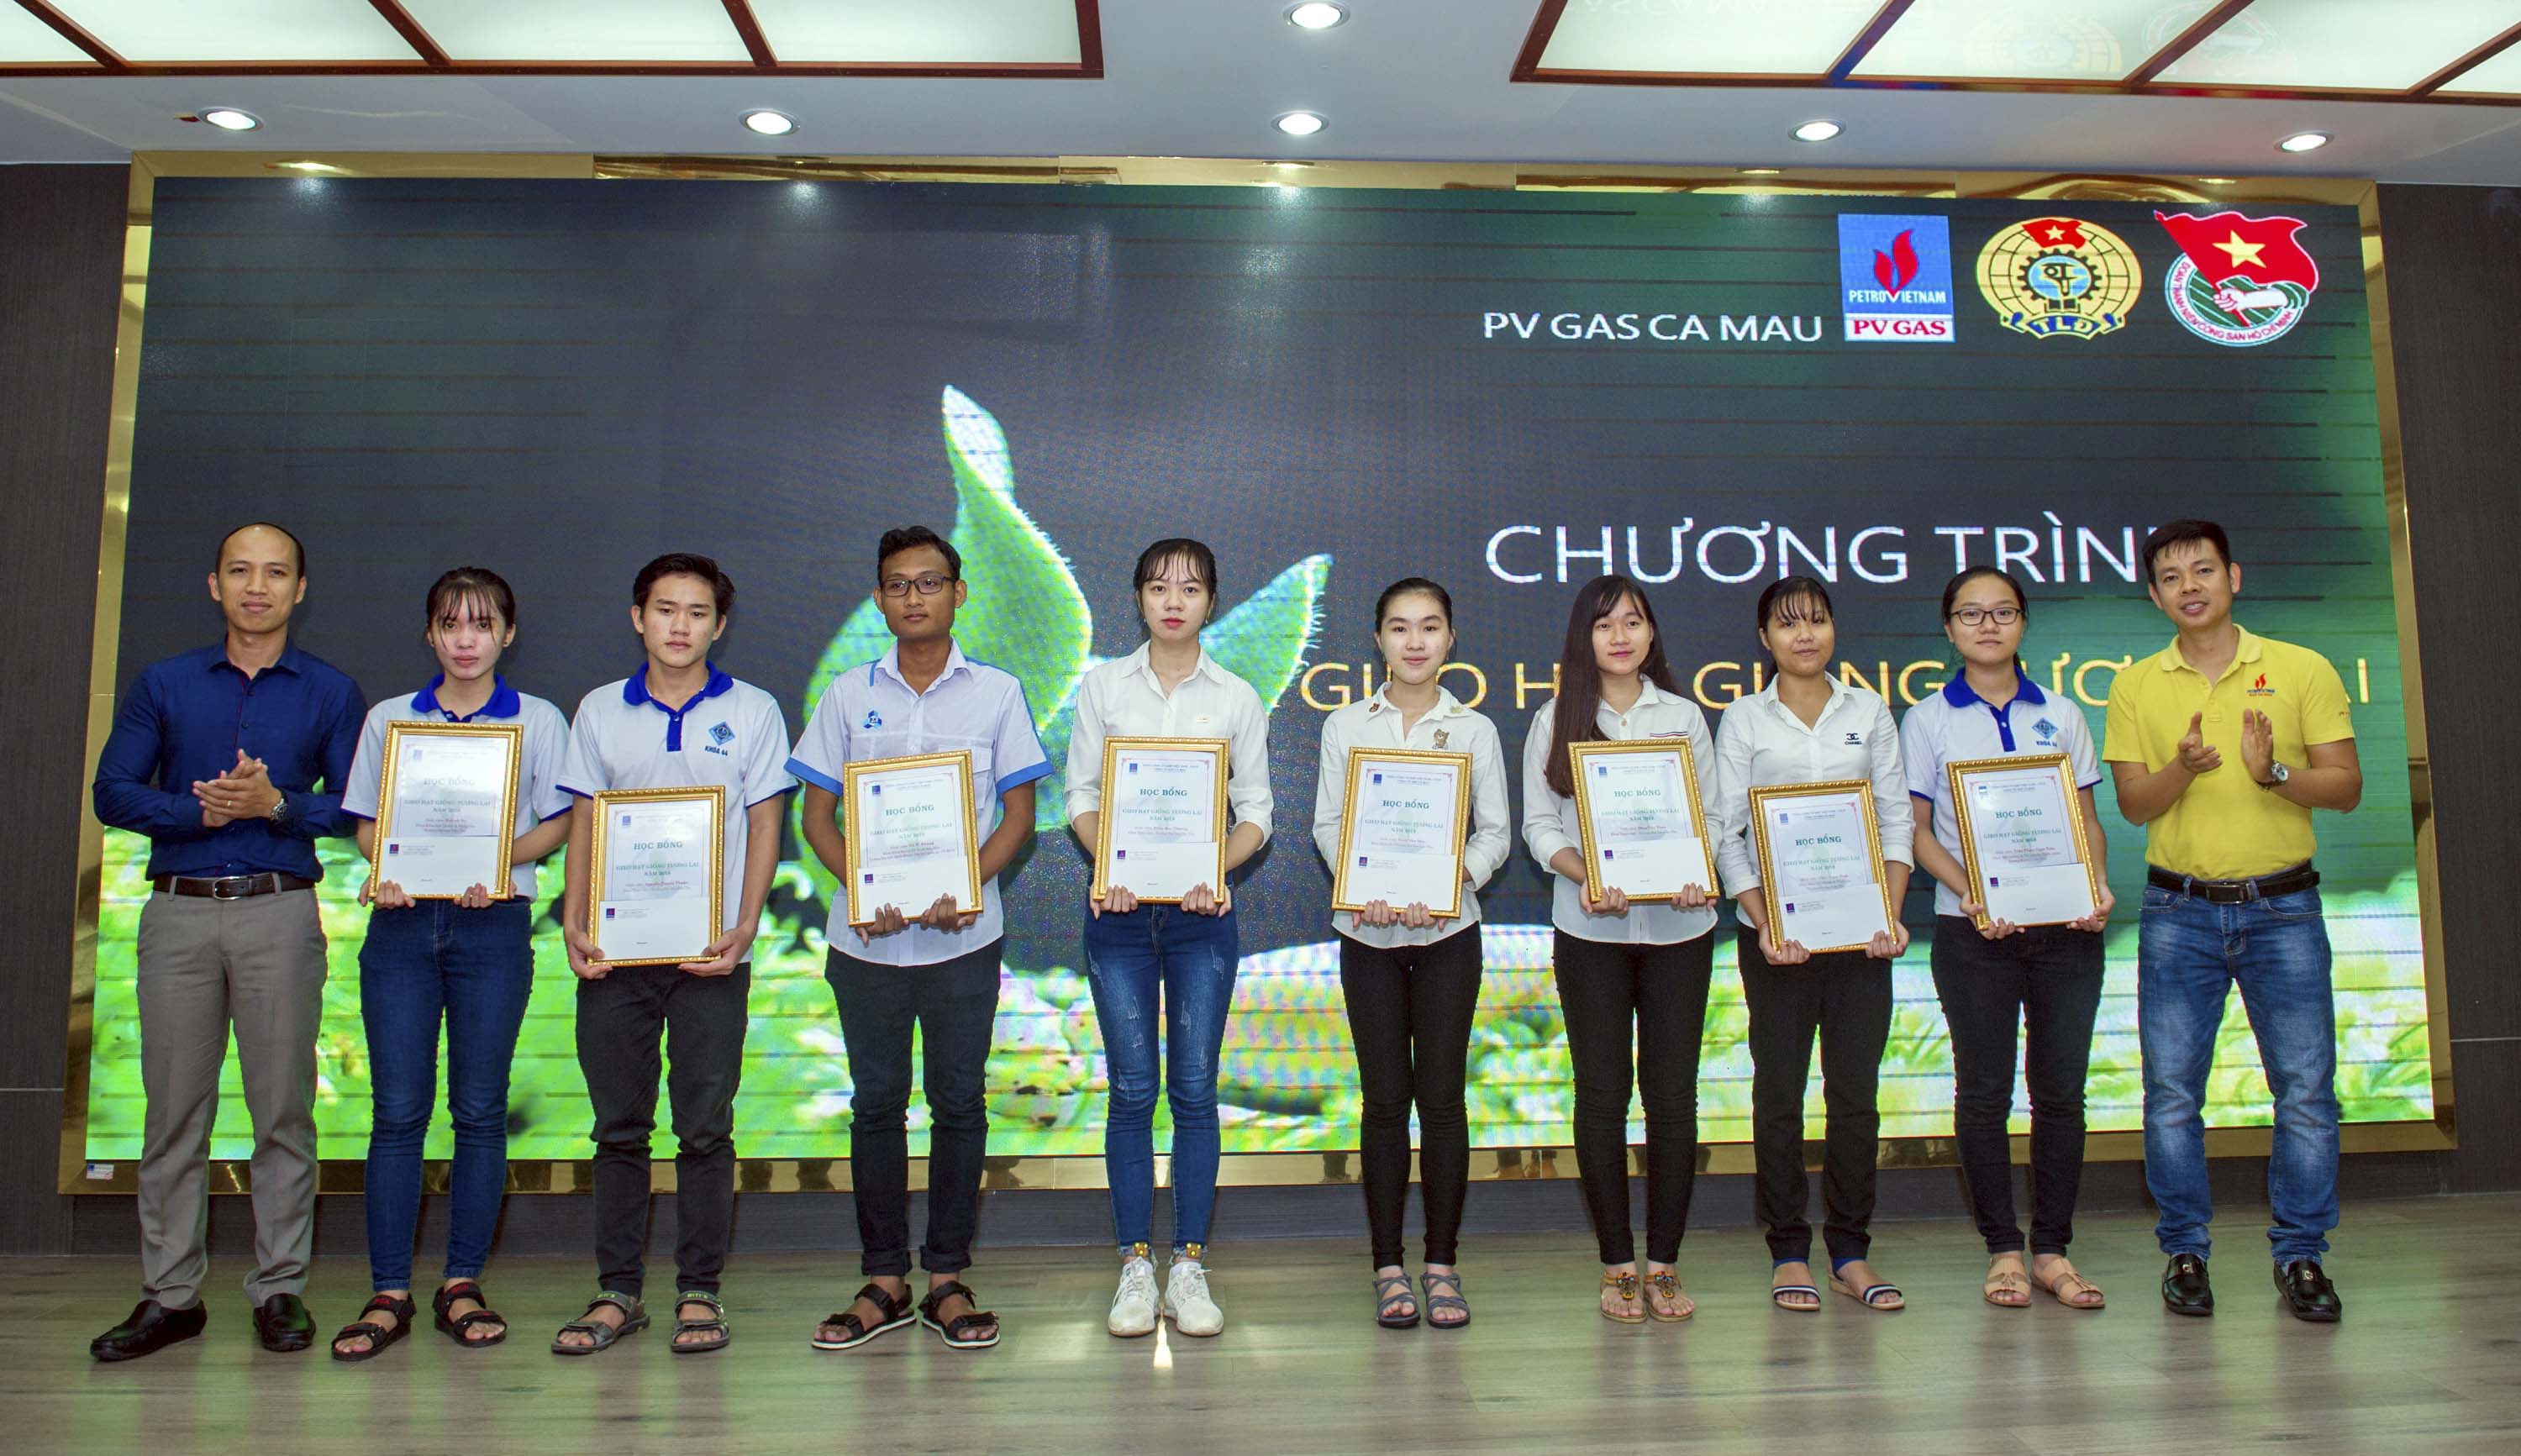 KCM trao học bổng cho sinh viên trong Chương trình "Gieo hạt giống tương lai" 2018